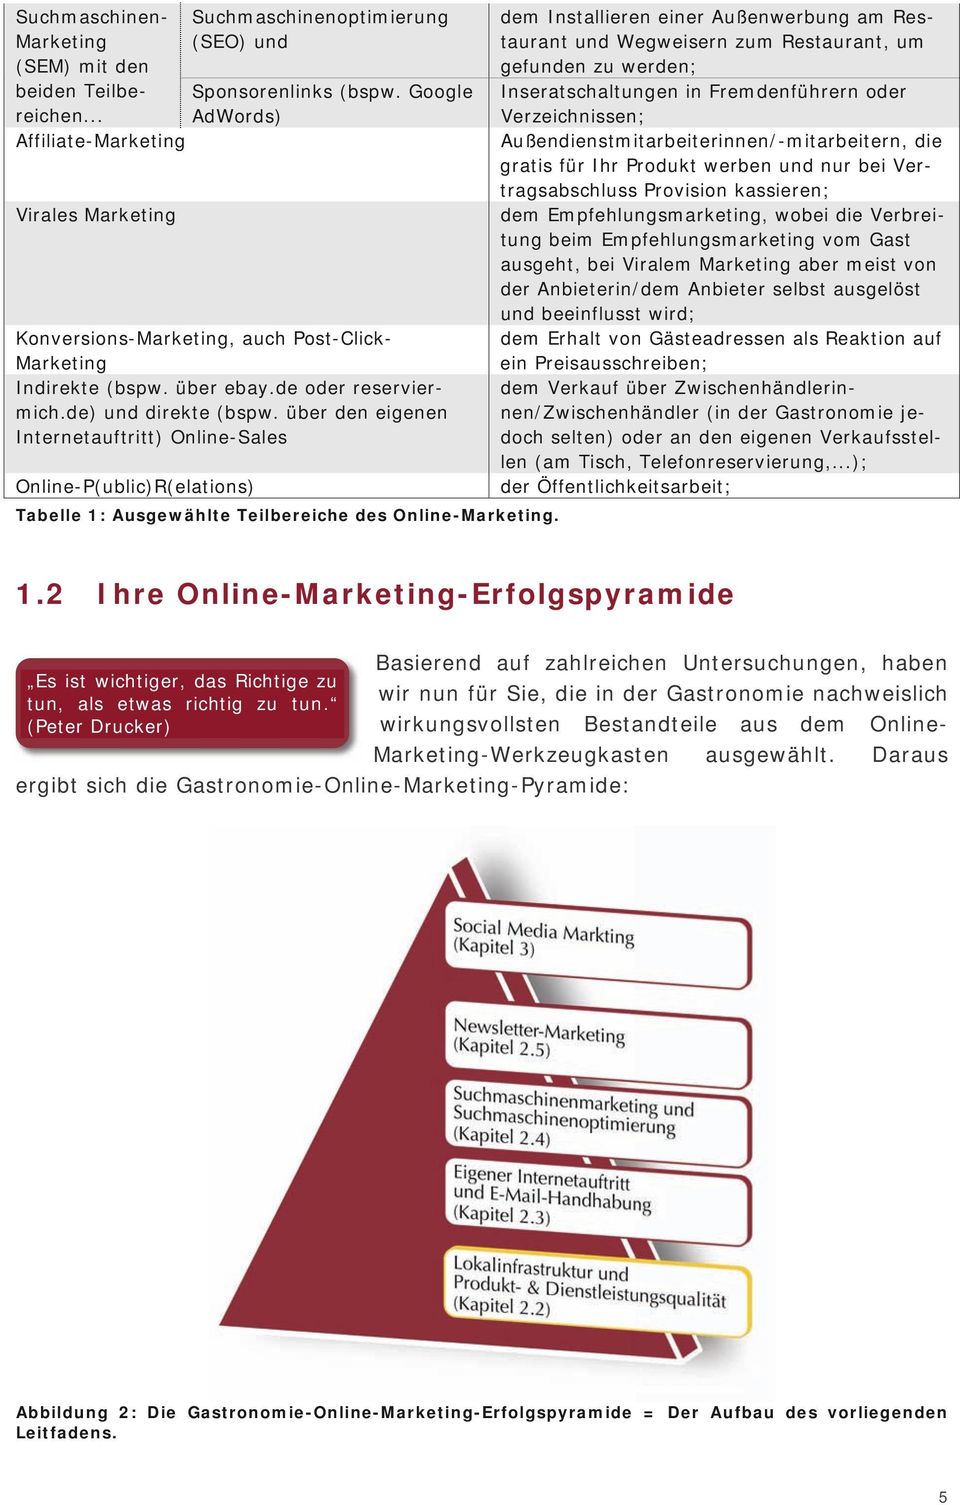 über den eigenen Internetauftritt) Online-Sales Online-P(ublic)R(elations) Tabelle 1: Ausgewählte Teilbereiche des Online-Marketing.